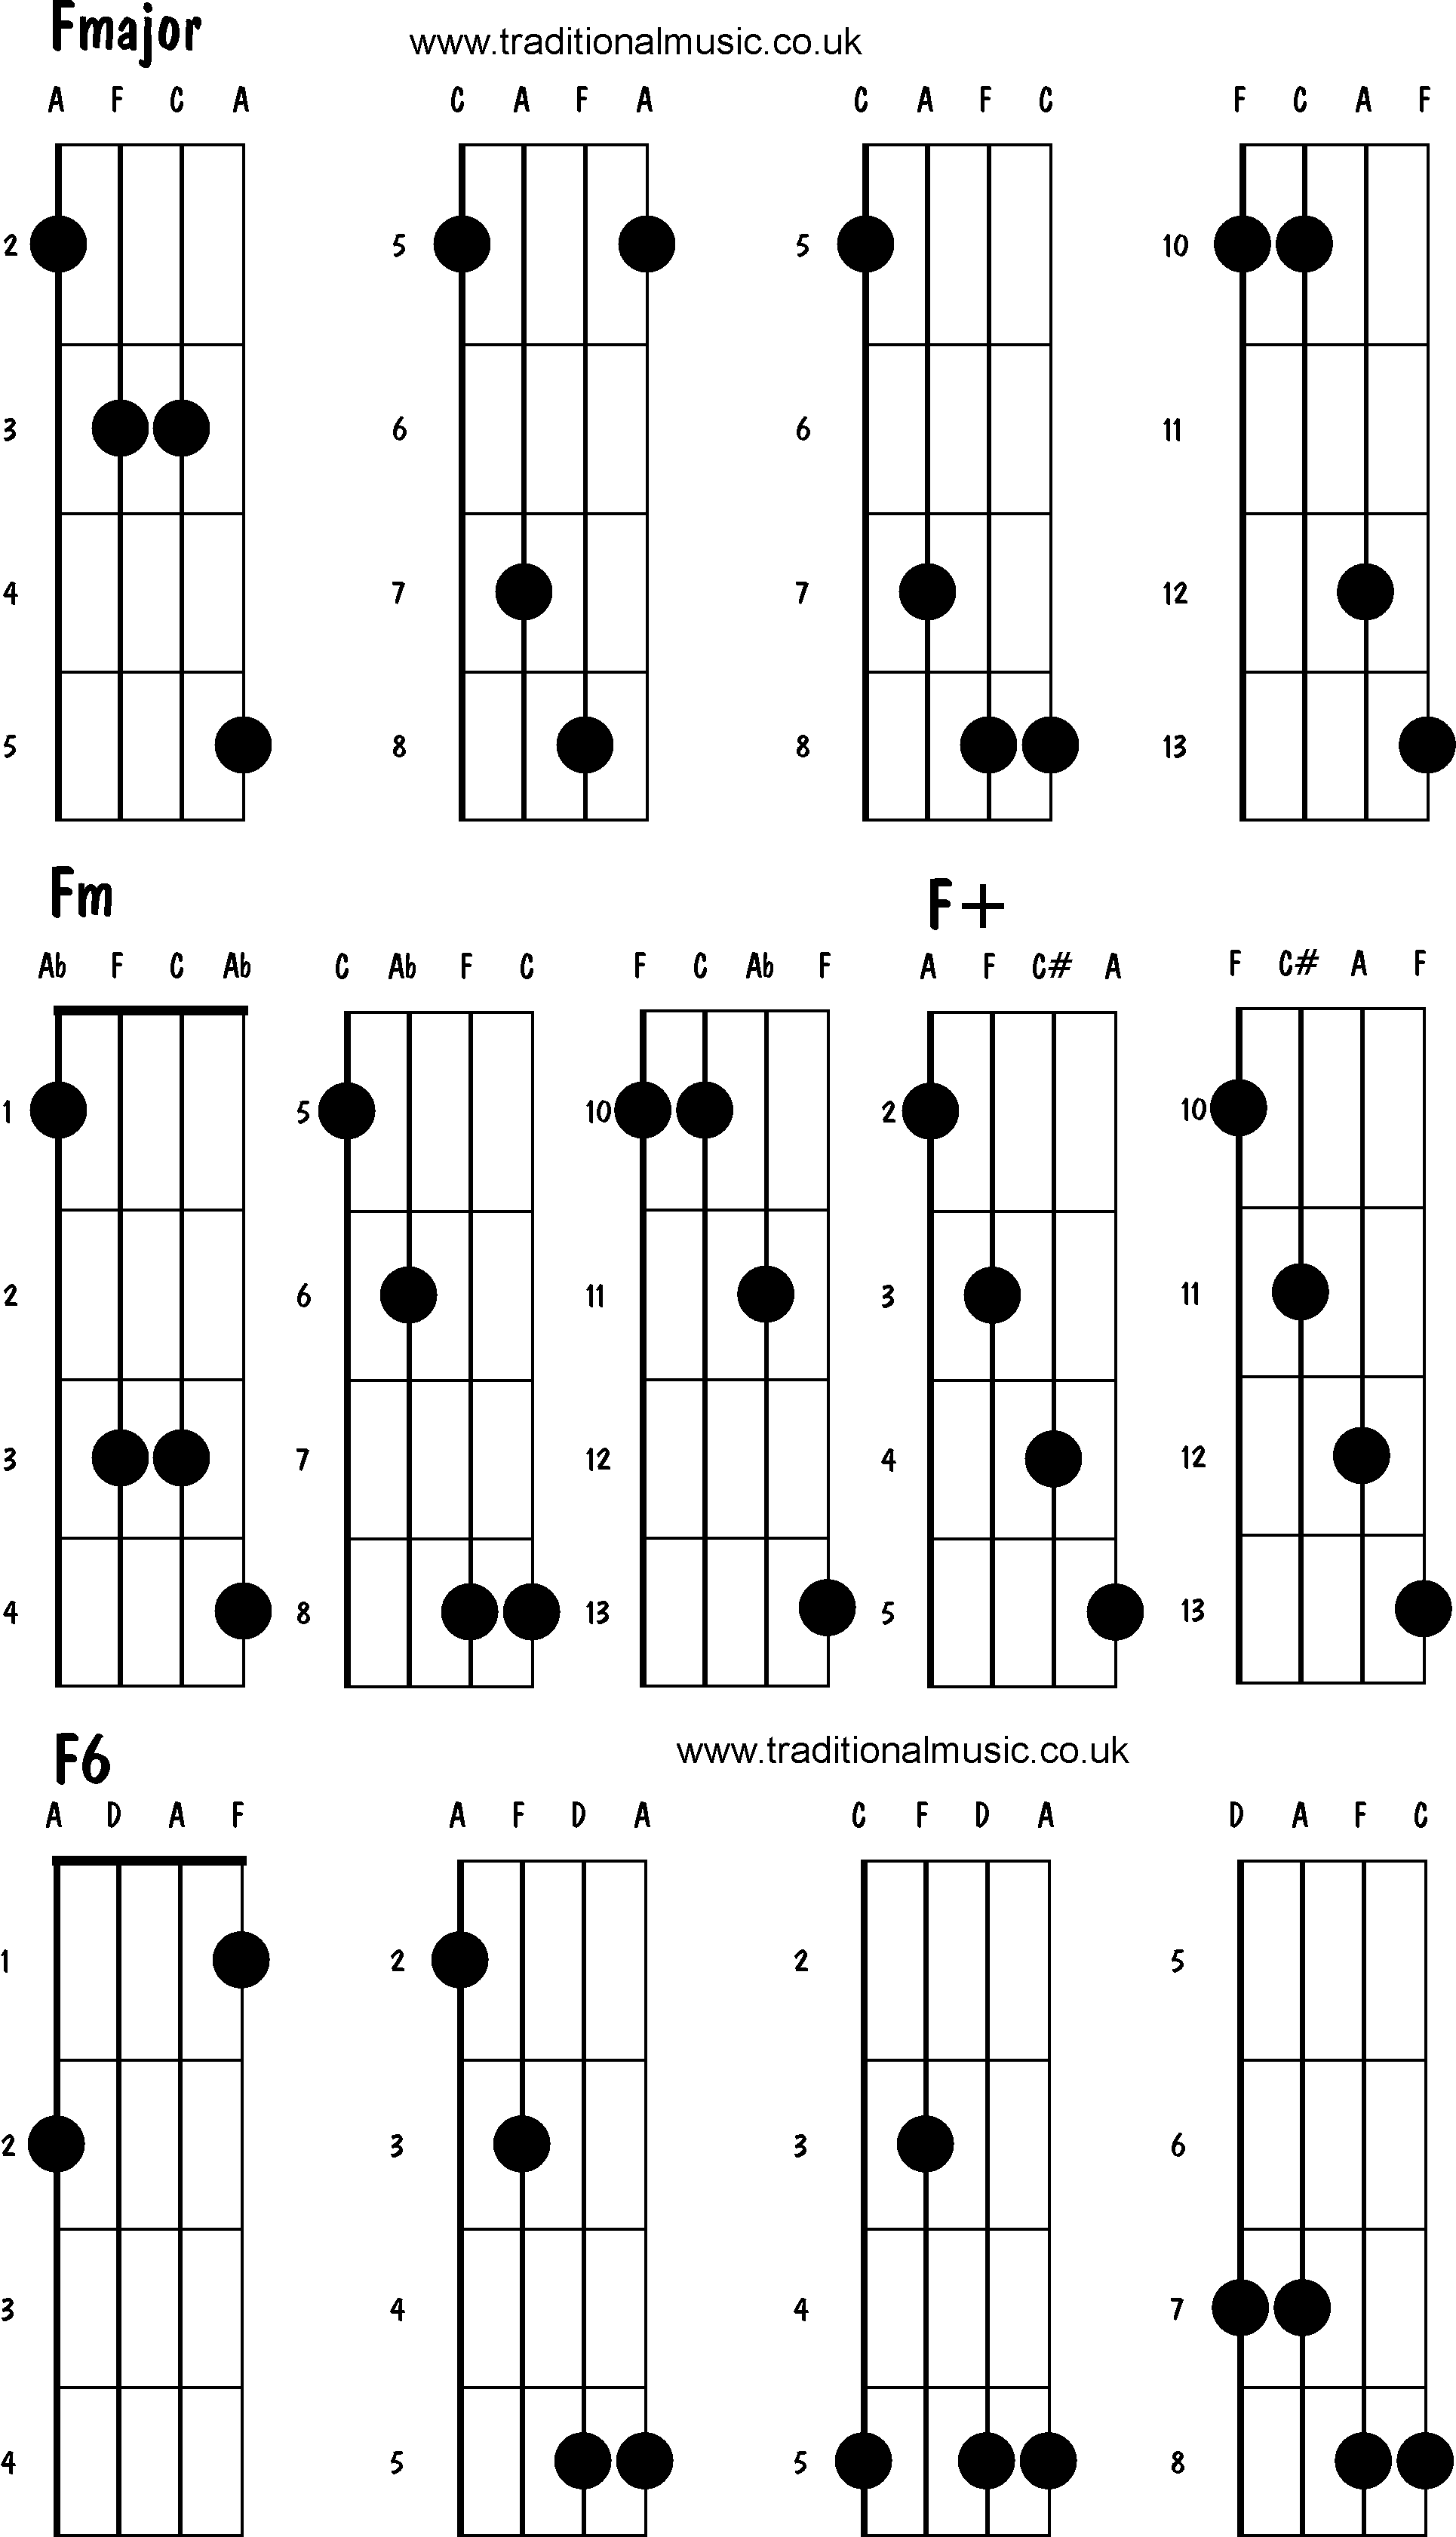 Advanced mandolin chords: Fmajor, Fm, F+, F6